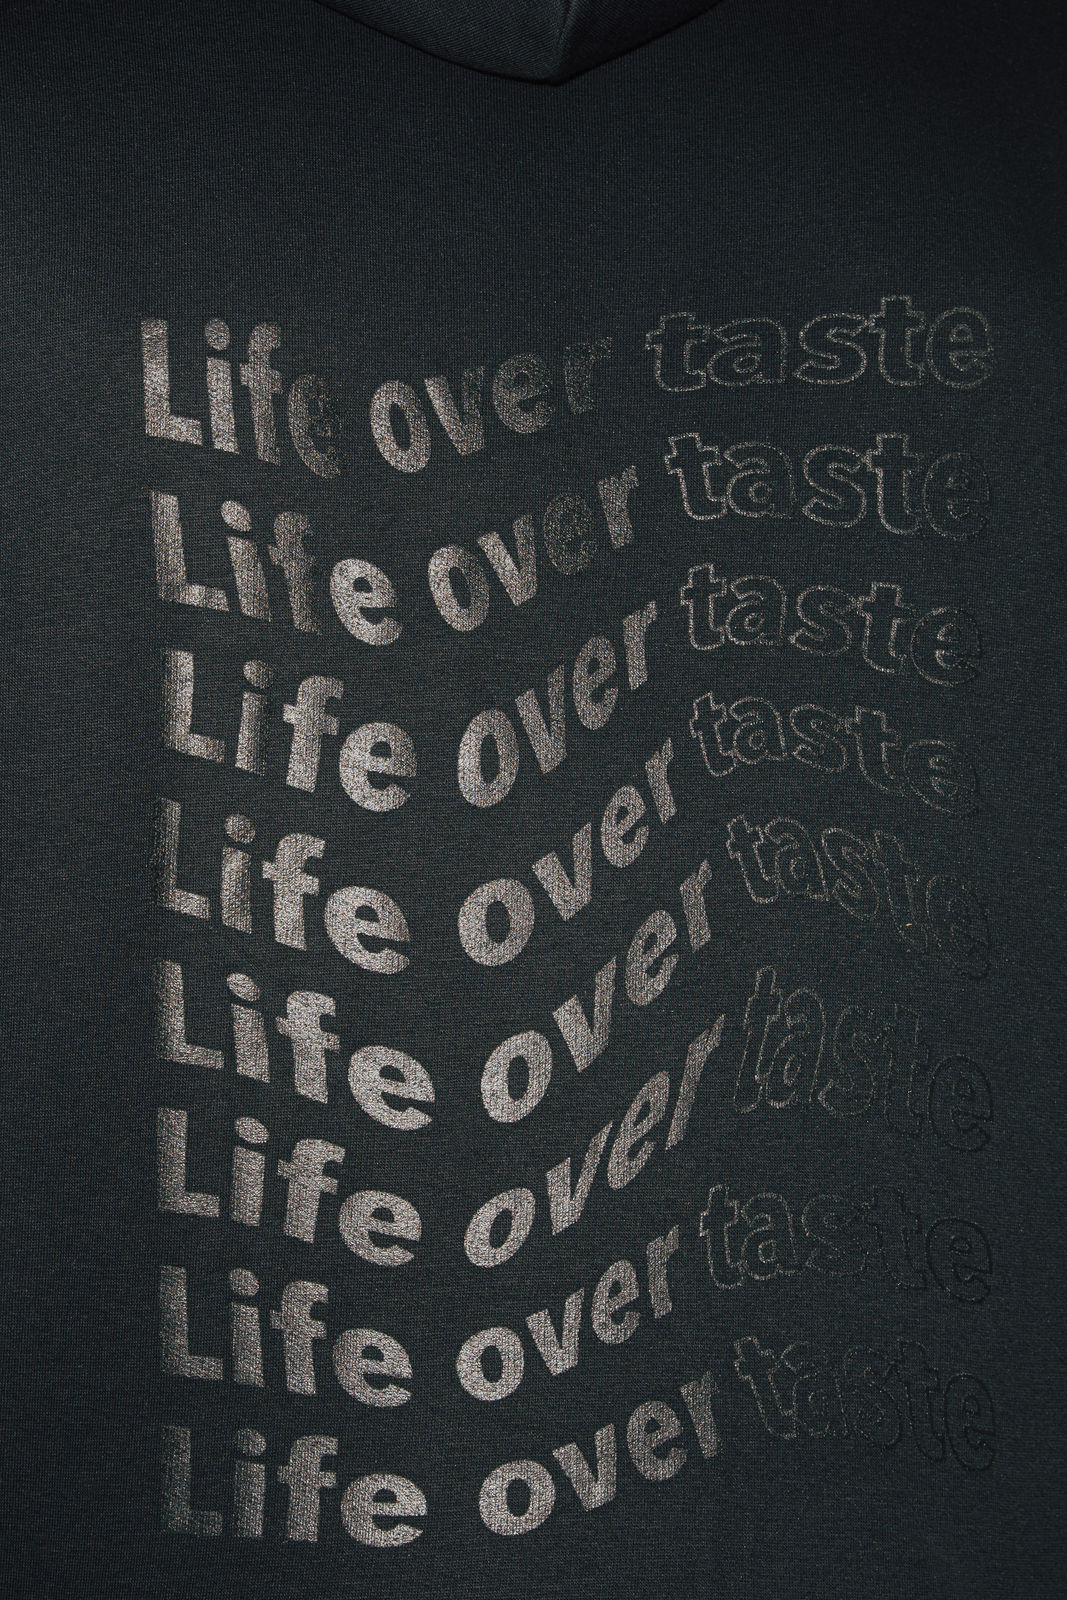 Hoodie "Life over taste" schwarz/schwarz